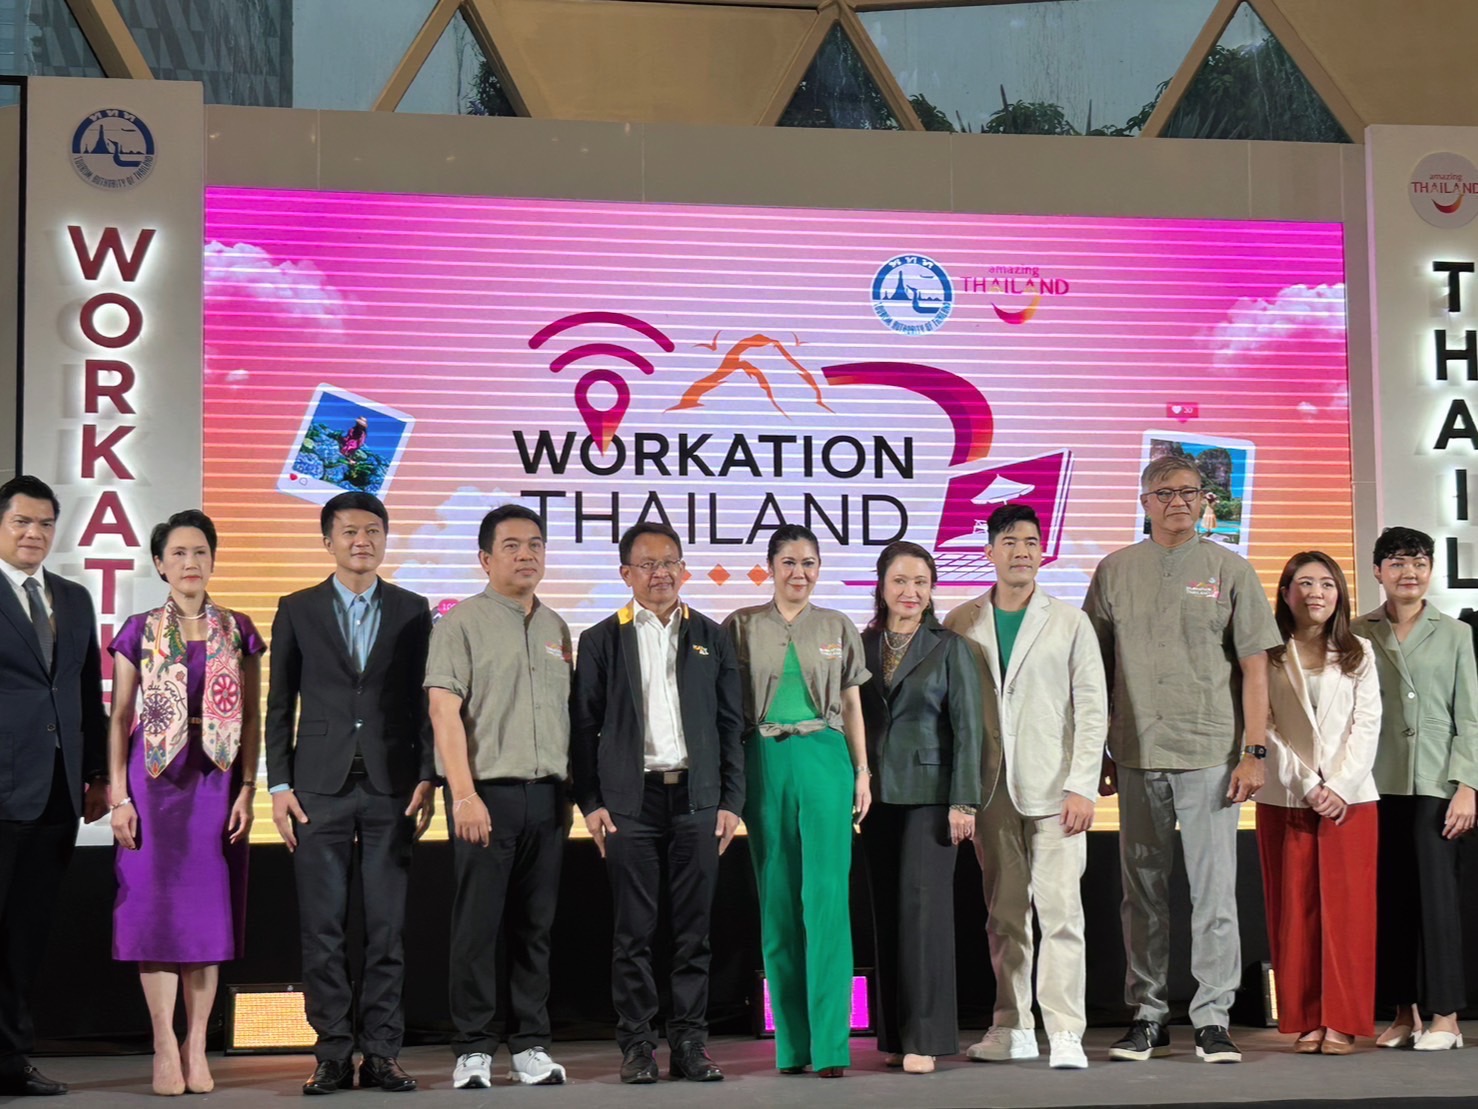 สศอ. ร่วมงานแถลงข่าวเปิดตัวโครงการ “Workation Thailand 100 เดียวเที่ยวได้งาน”